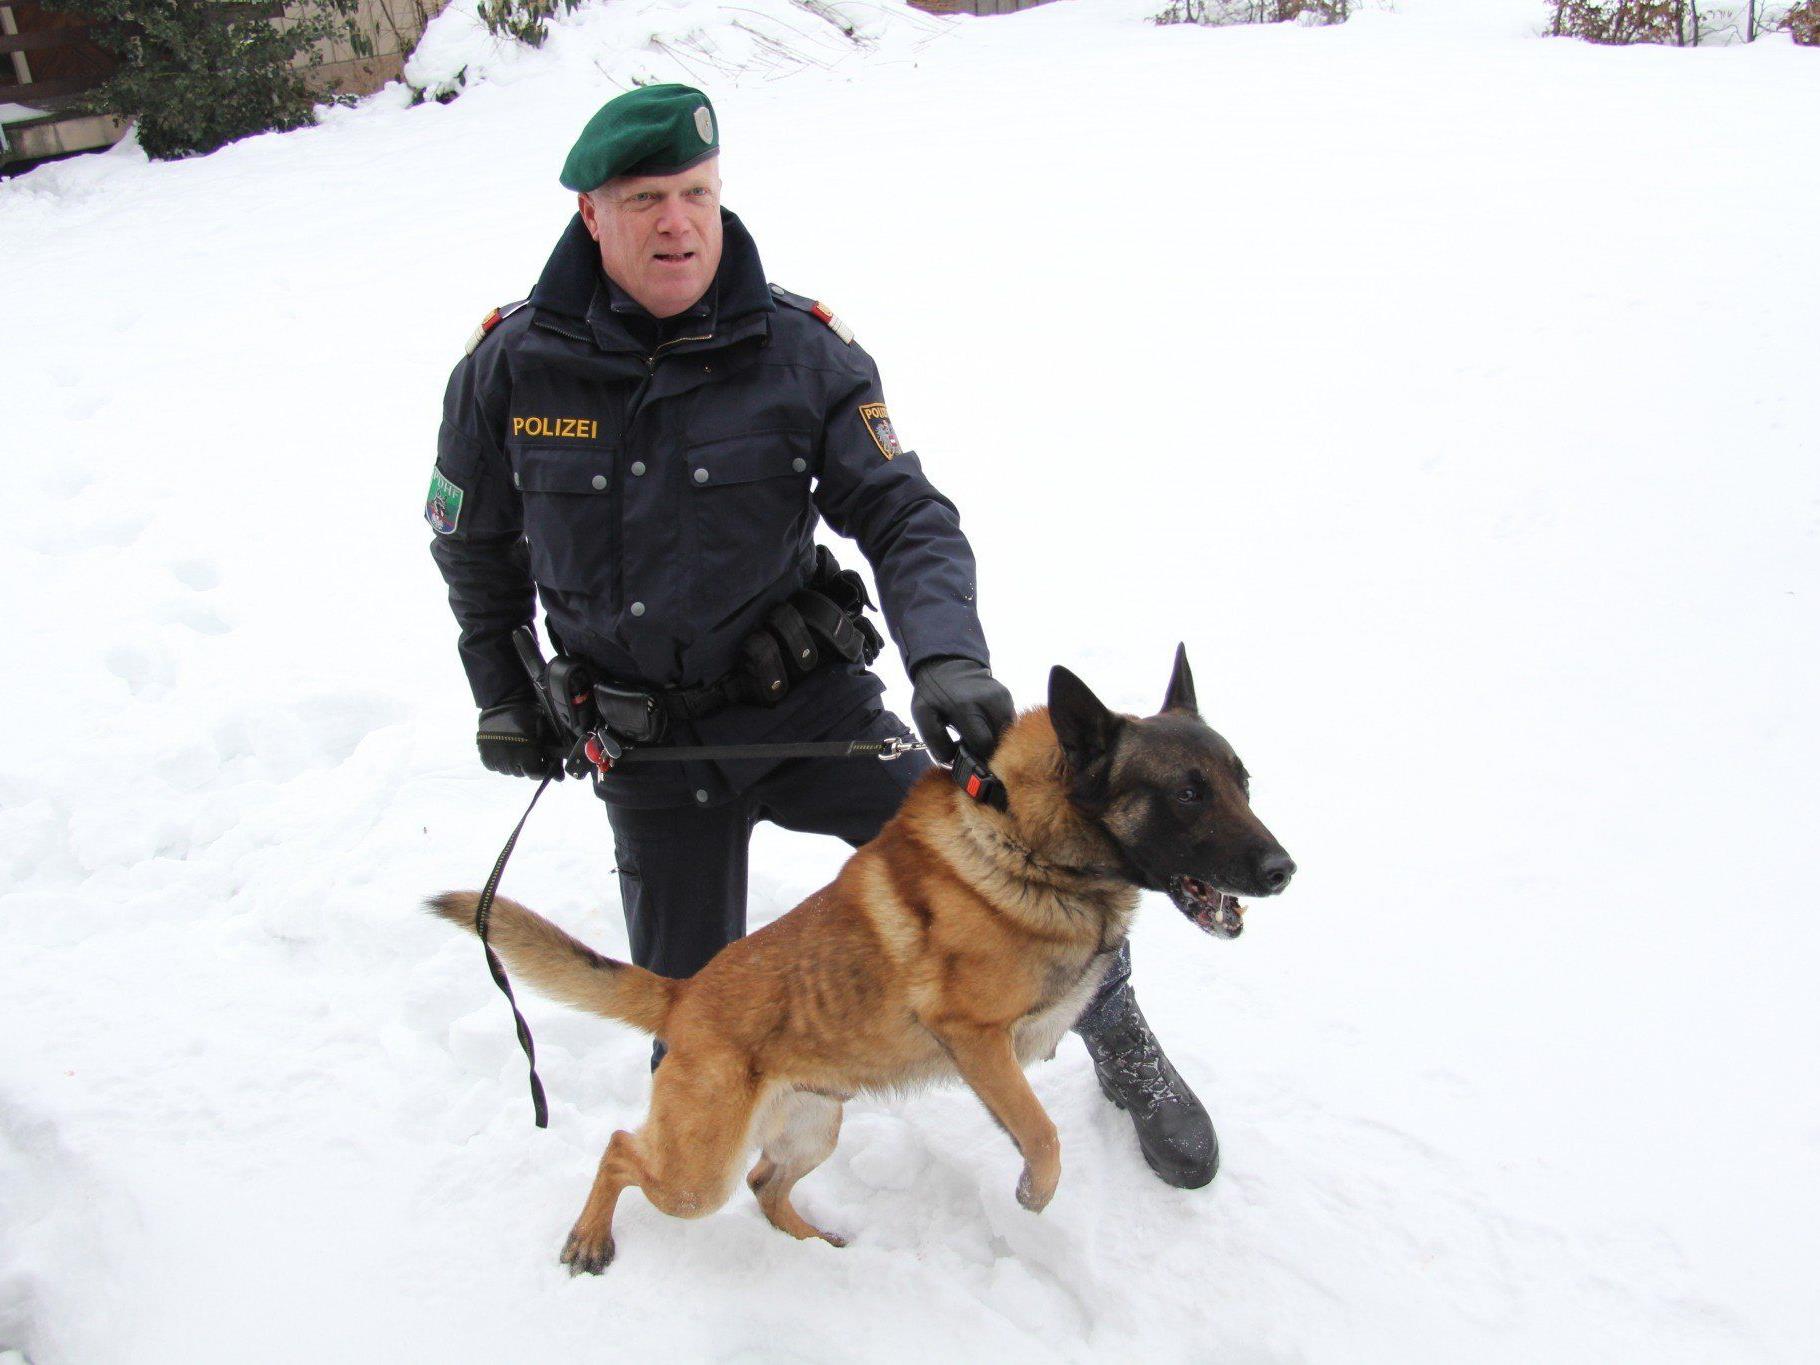 Gruppeninspektor Christian Kloos und sein Hund "Icy".